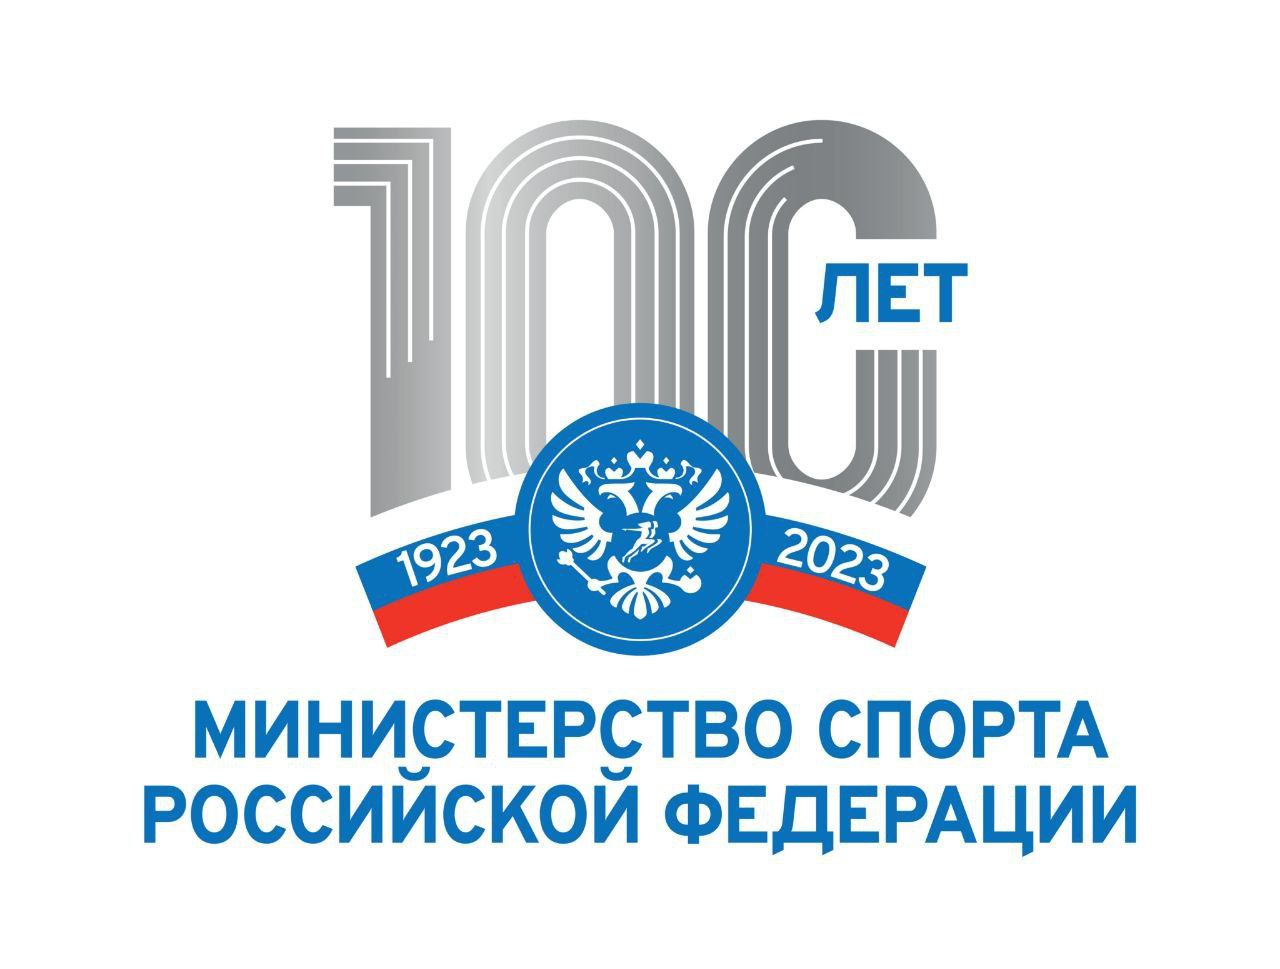 К юбилею министерства спорта России мы запускаем новую рубрику – «100 лет достижений»